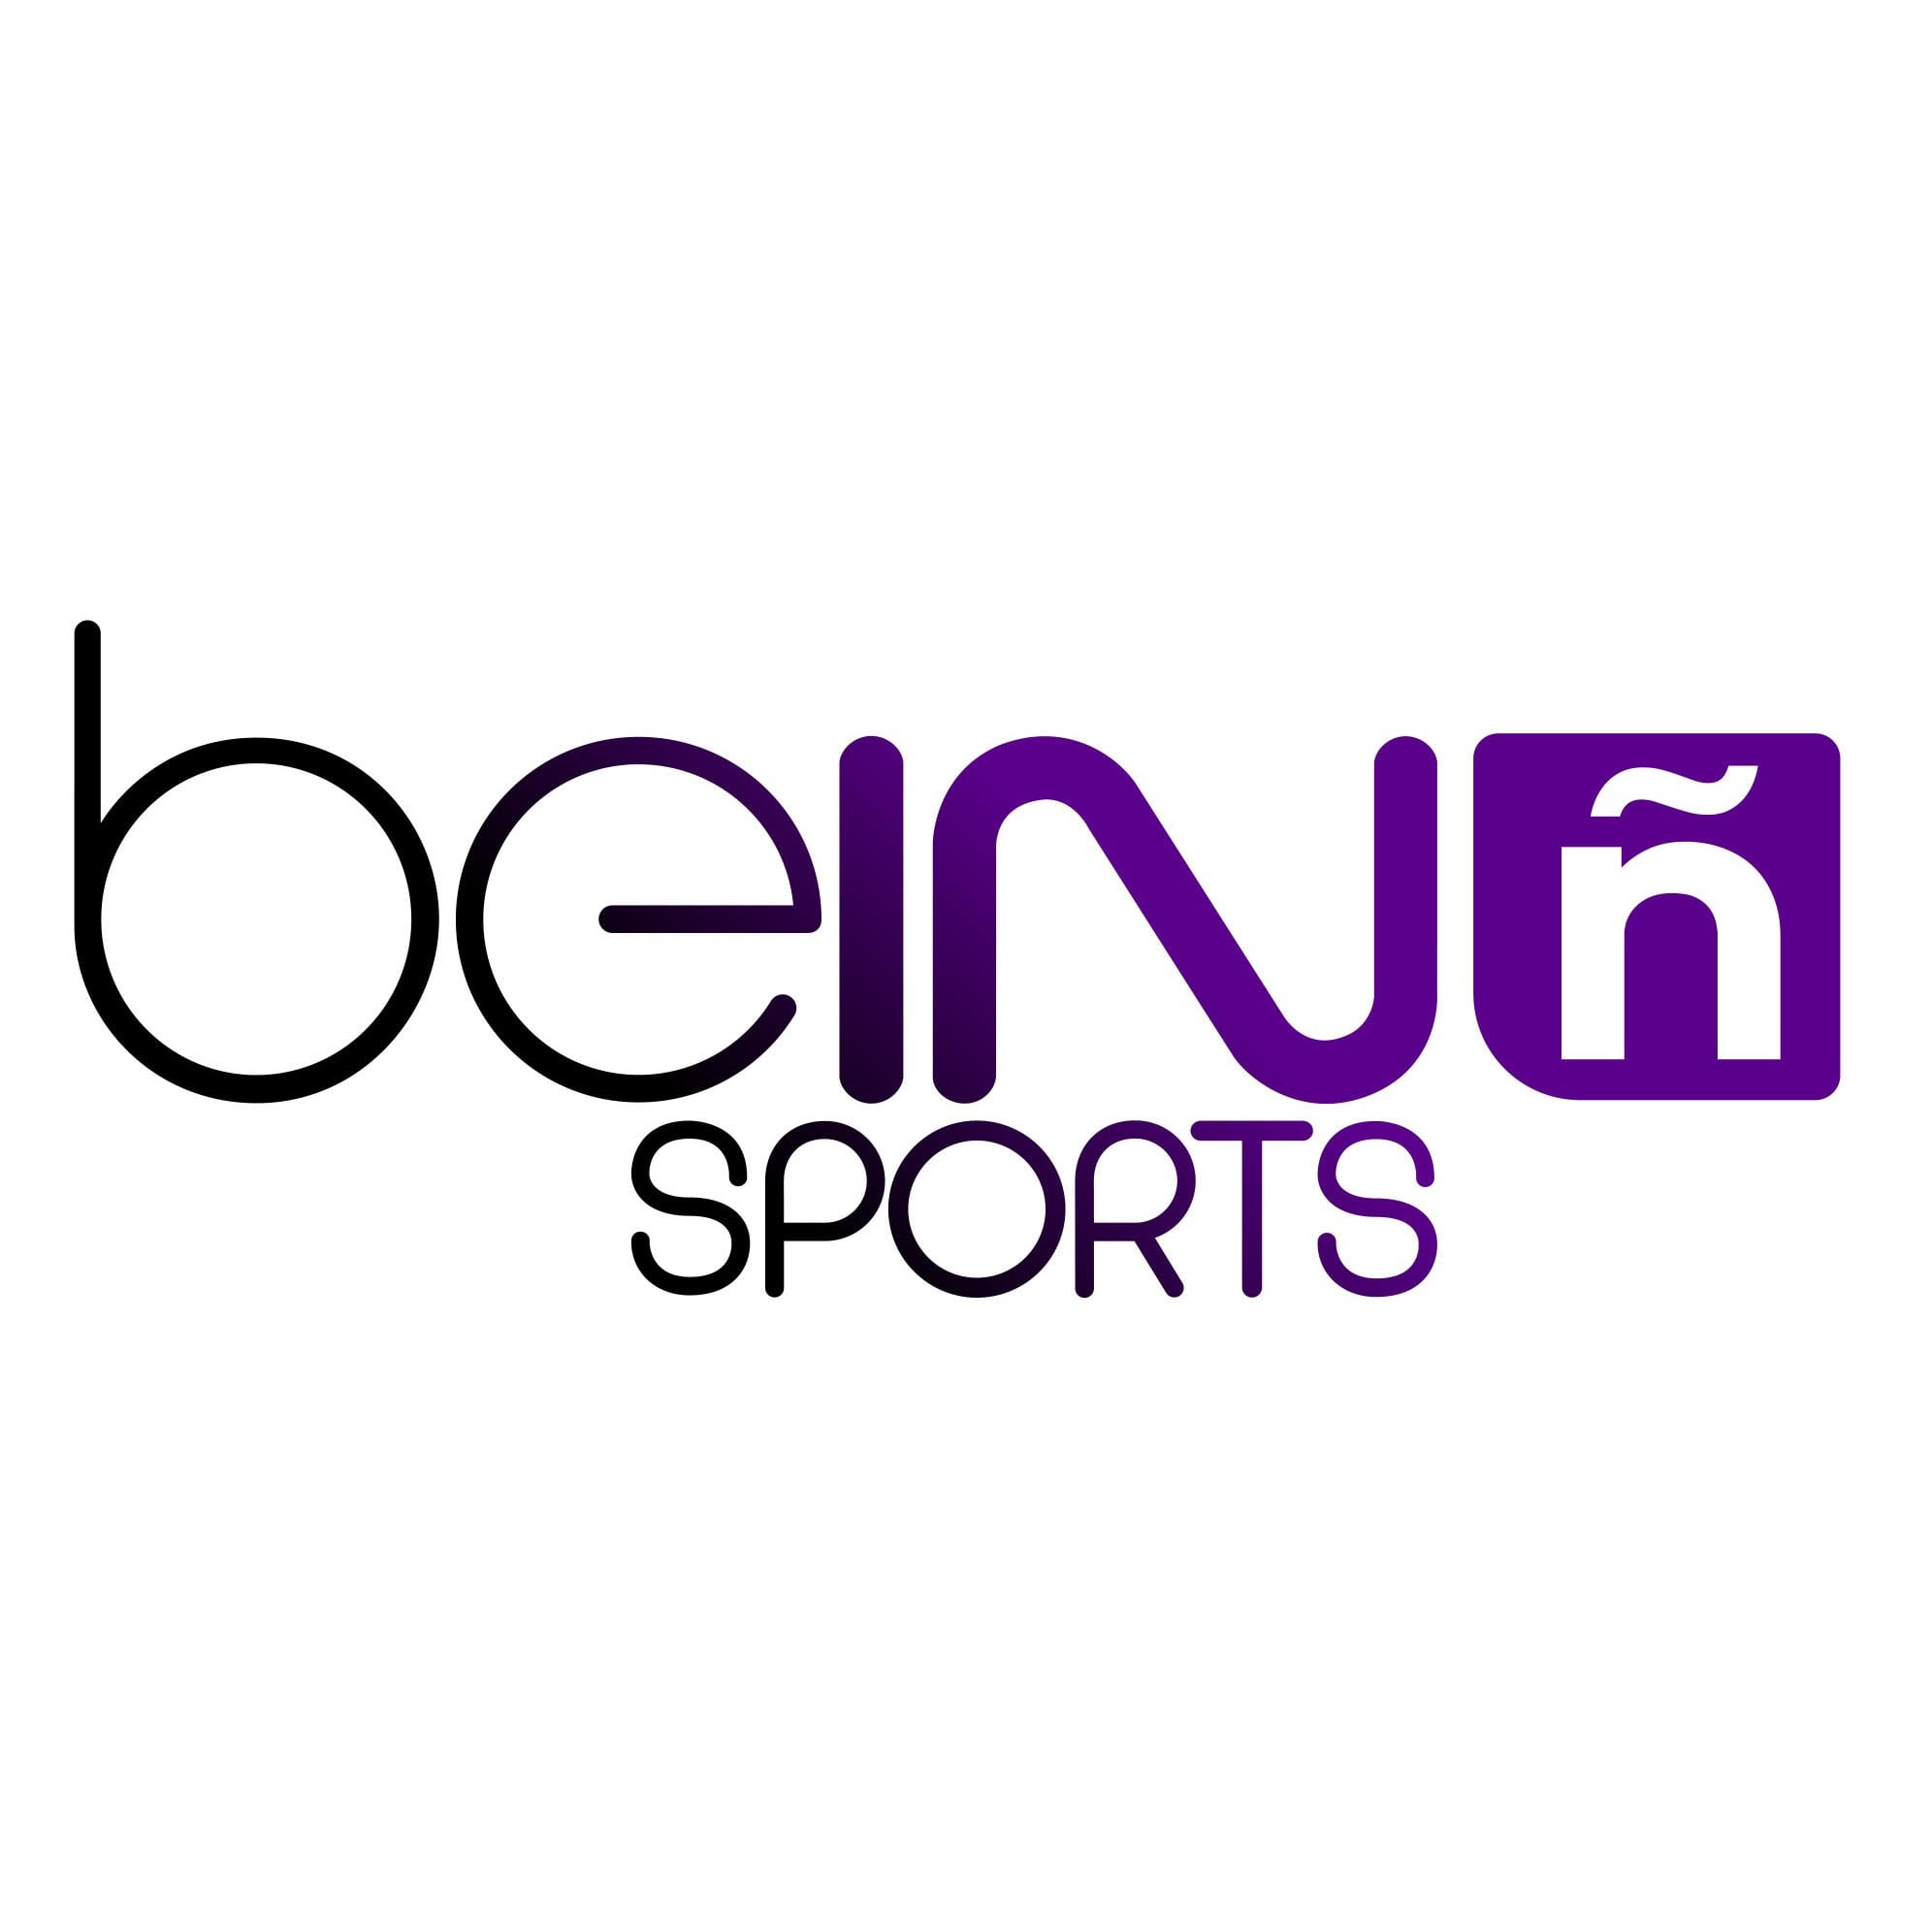 Bein sport live stream. Логотип Телеканал Bein Sports. Bein Sports Max 2. Bein Sport Max hd1.